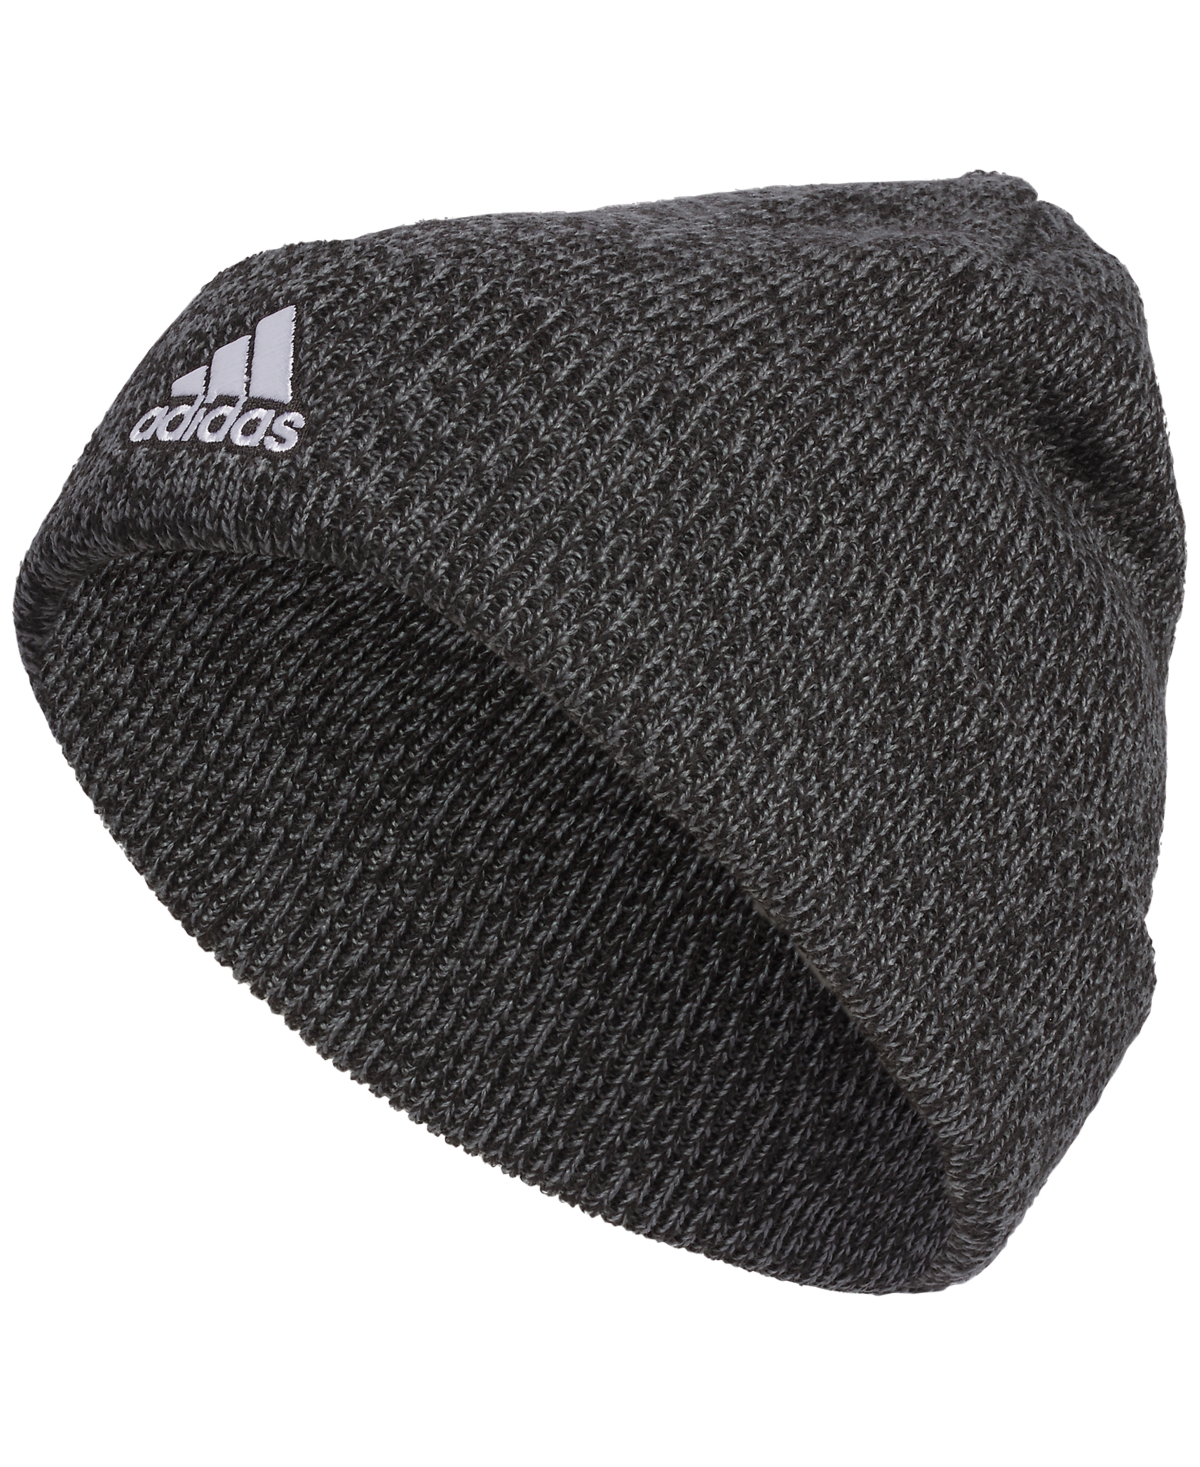 Adidas Originals Men's Team Issue Folded Knit Beanie In Dark Grey Heather